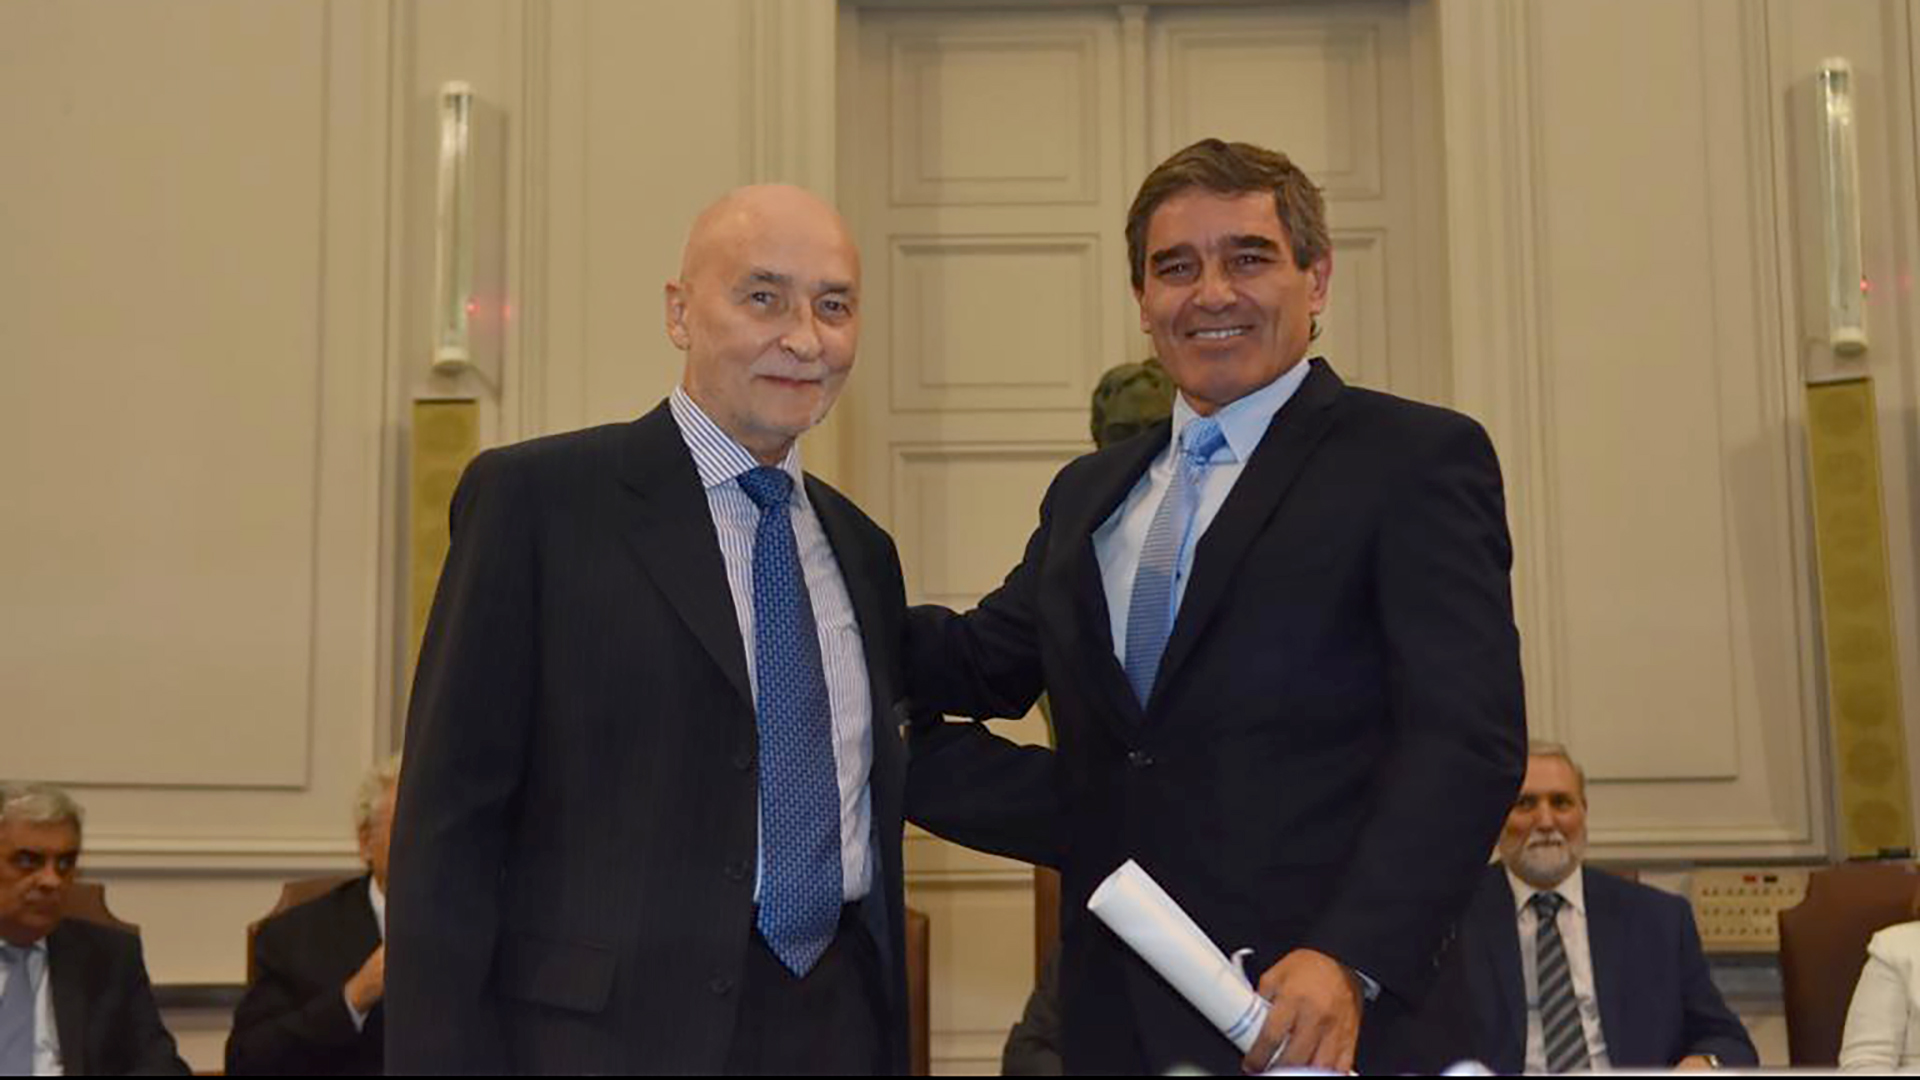 El ministro de Salud de CABA, Fernán Quirós, recibió el premio bienal que otorga la Academia Nacional de Medicina de Buenos Aires